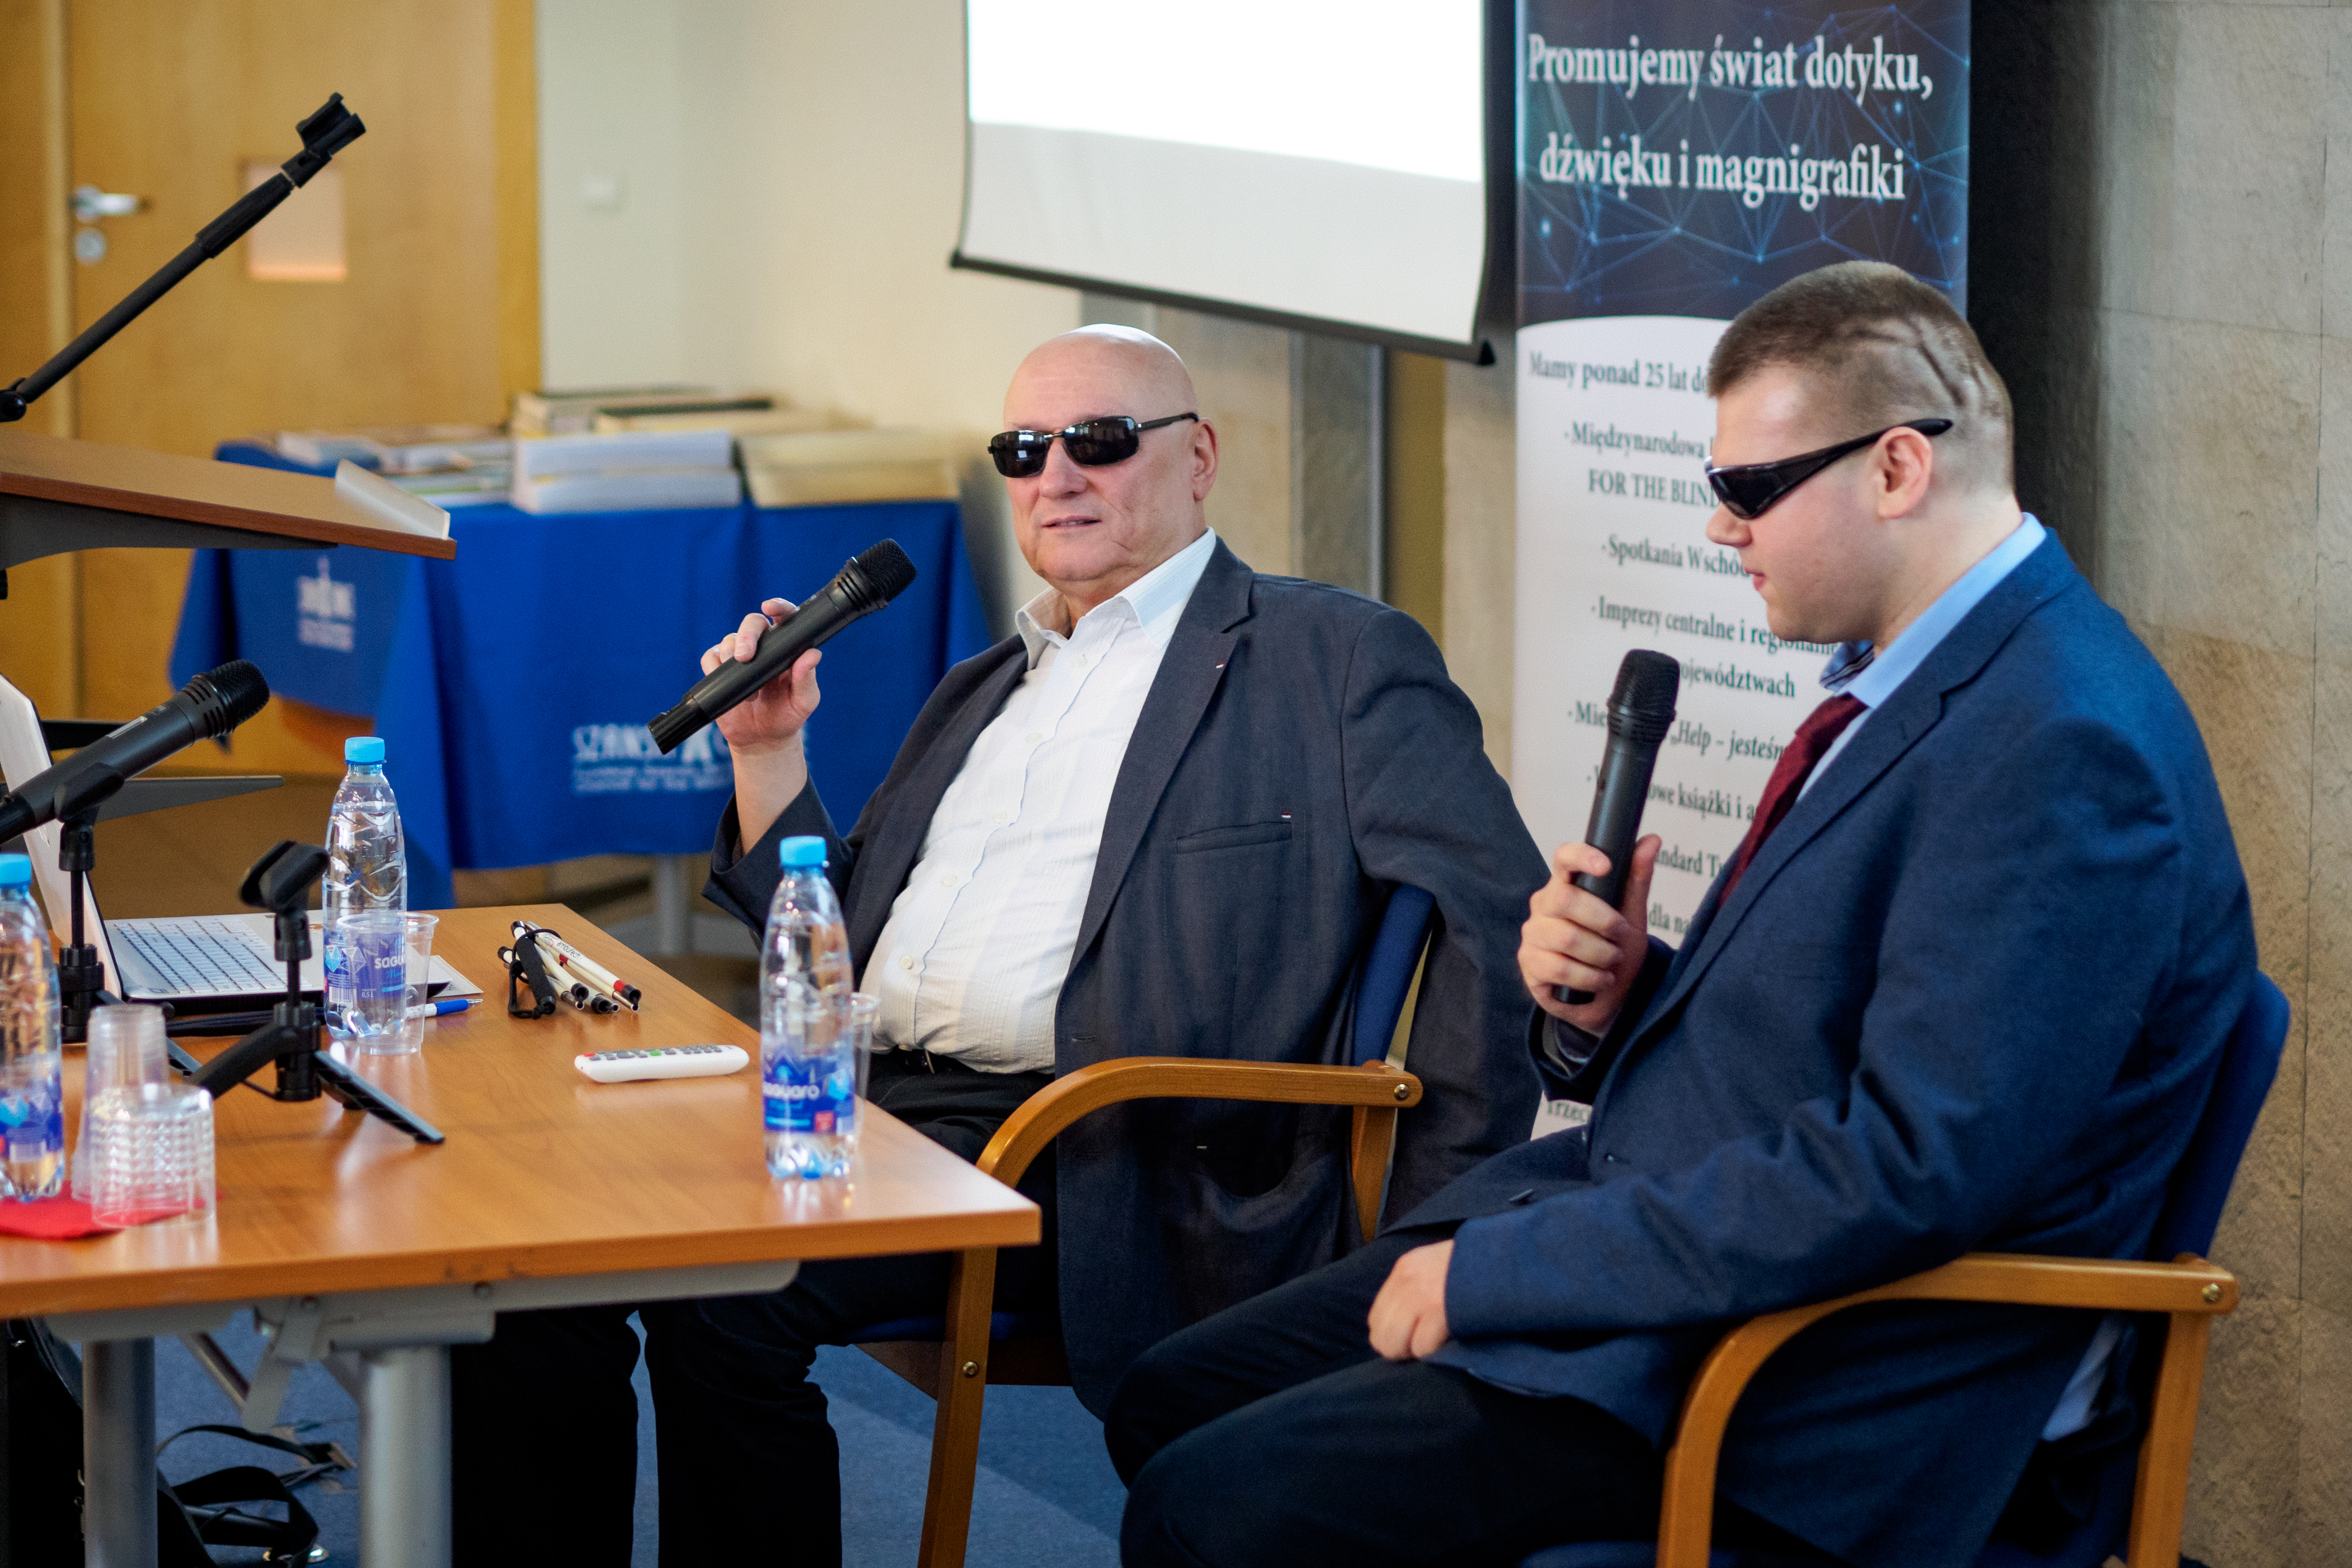 Dwóch niewidomych mężczyzn przy stole. Jednym z nich jest Pan Marek Kalbarczyk. 